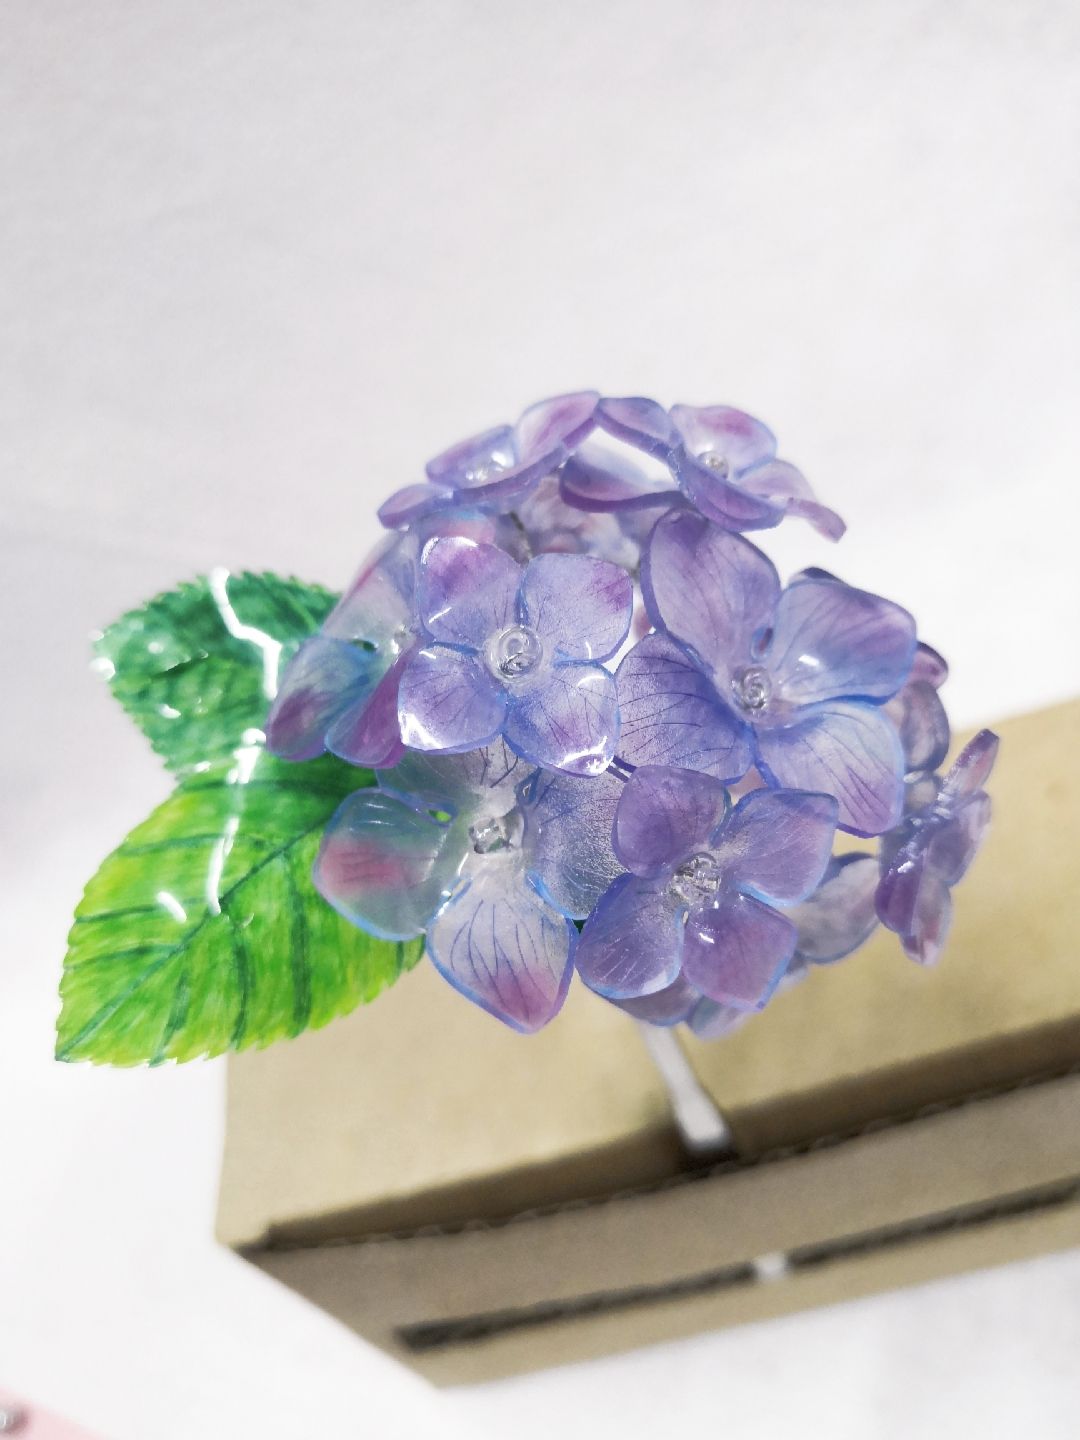 原来紫阳花就是绣球
做了一支发簪，记录一下过程